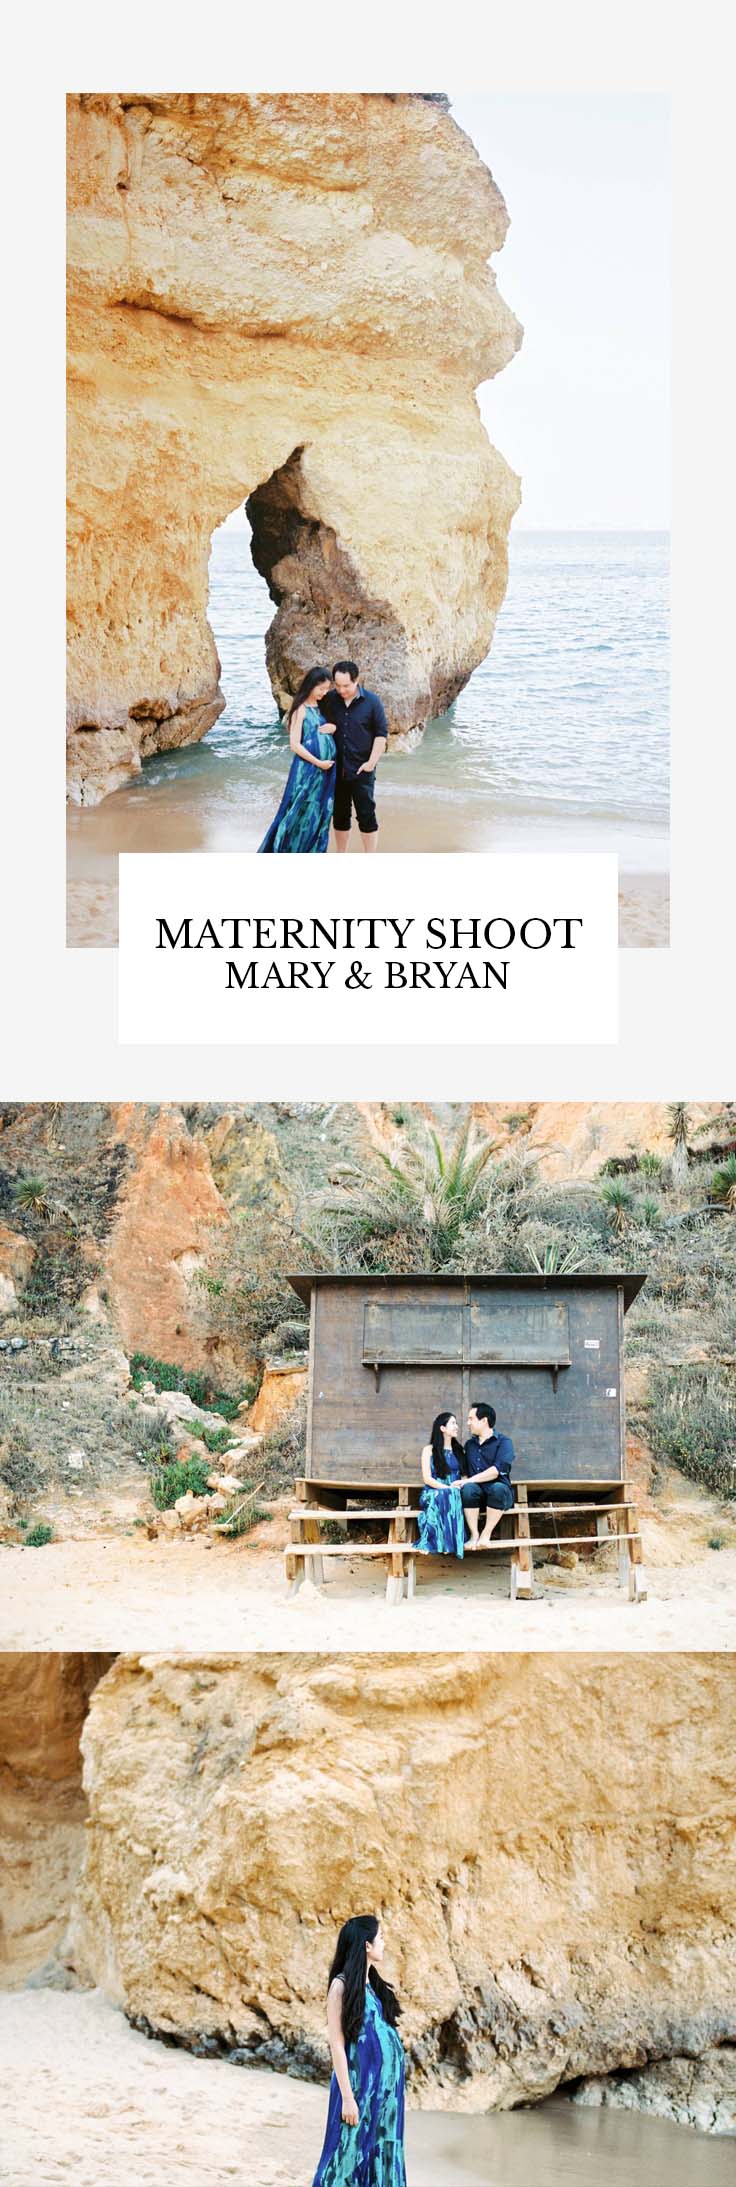 Maternity shoot - Mary & Bryan